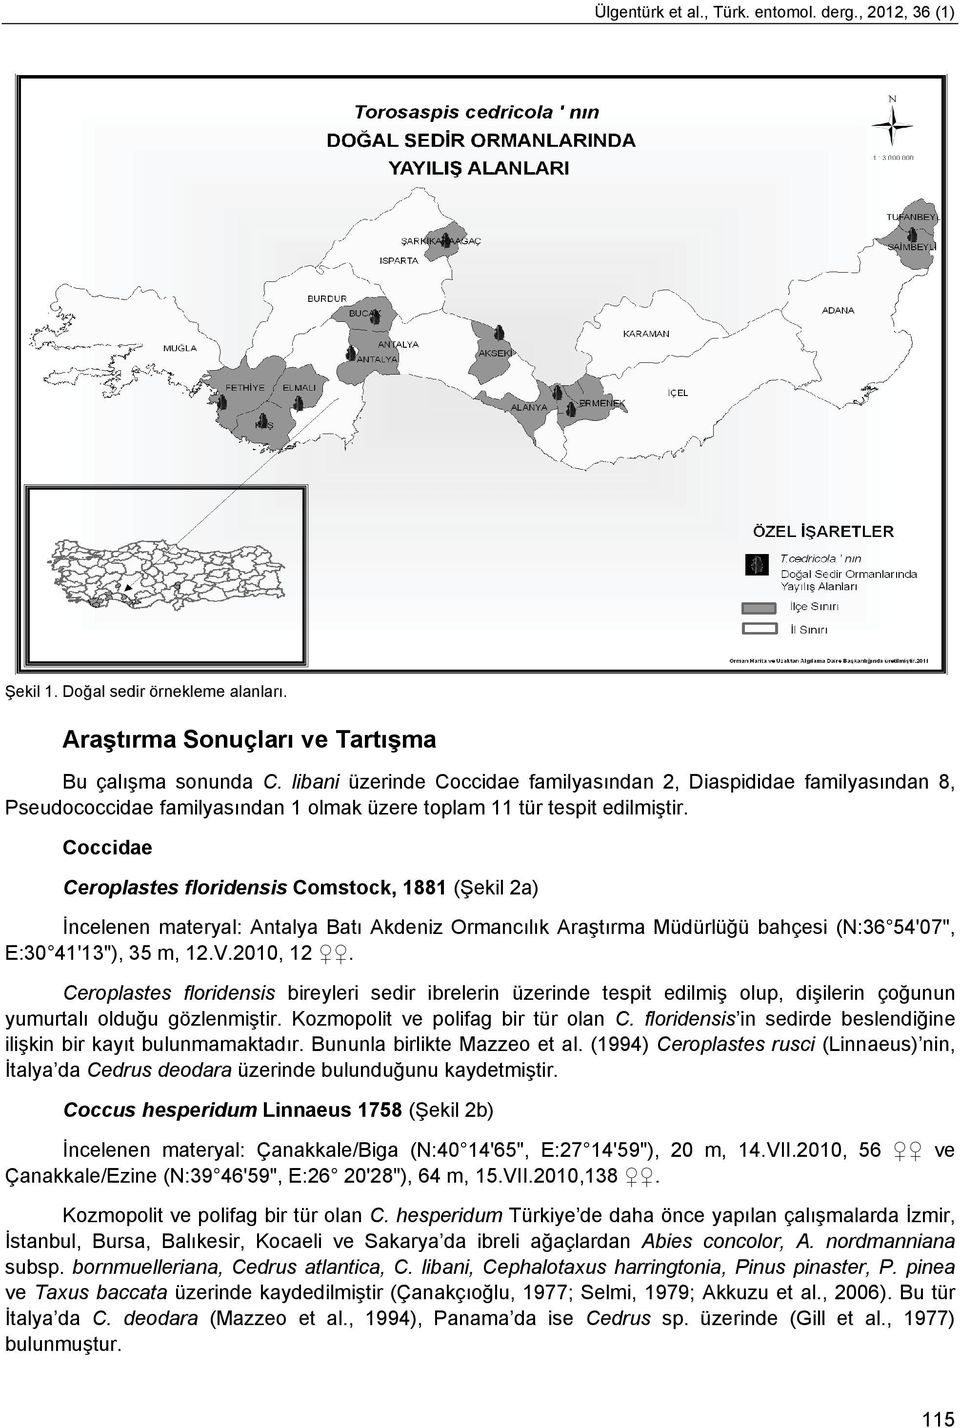 Coccidae Ceroplastes floridensis Comstock, 1881 (Şekil 2a) İncelenen materyal: Antalya Batı Akdeniz Ormancılık Araştırma Müdürlüğü bahçesi (N:36 54'07", E:30 41'13"), 35 m, 12.V.2010, 12.